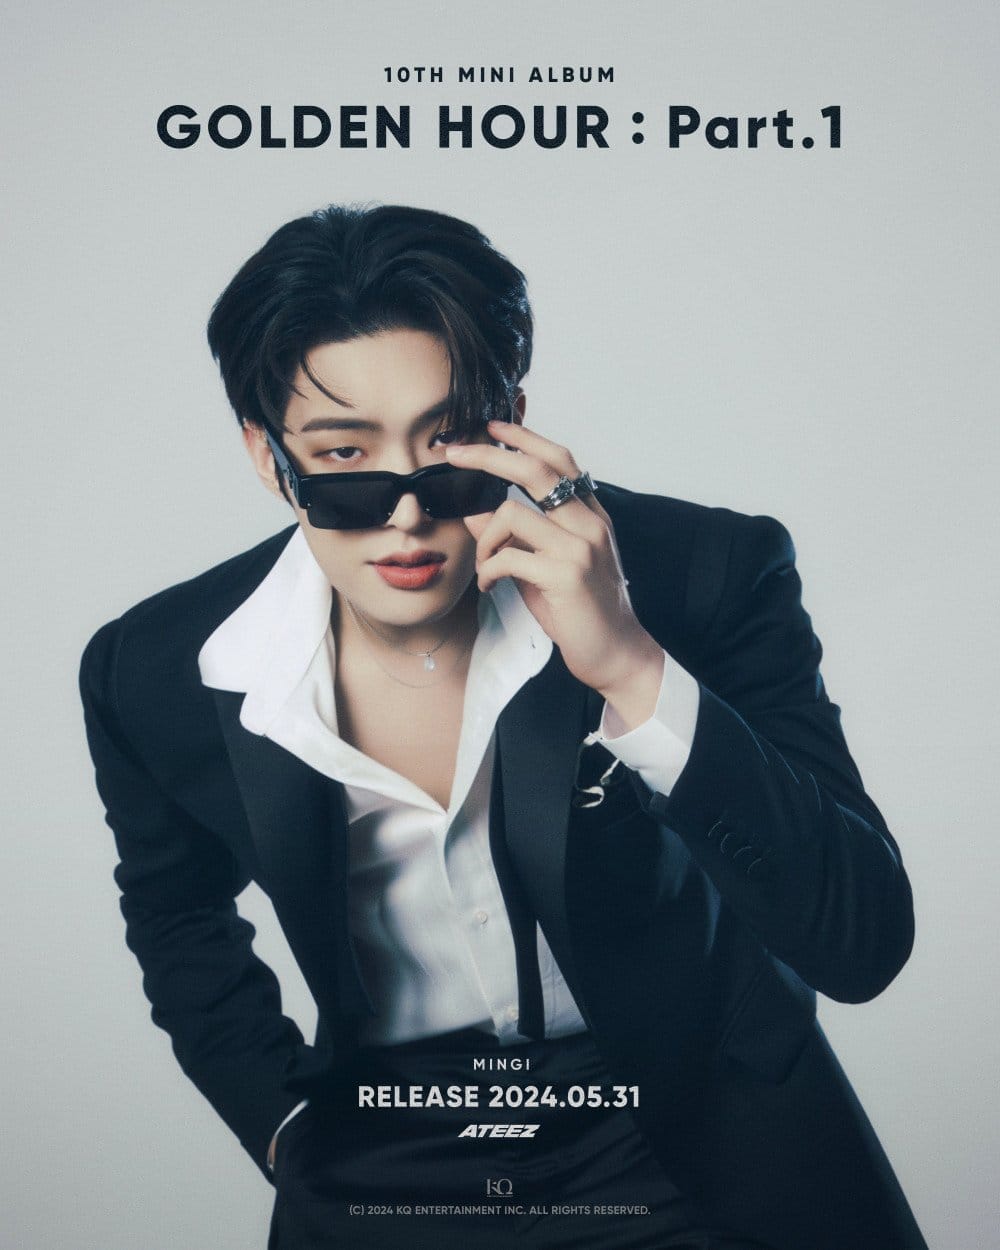 ATEEZ готовятся «работать» в стильных четвертых концепт-фото для альбома 'Golden Hour : Part. 1'